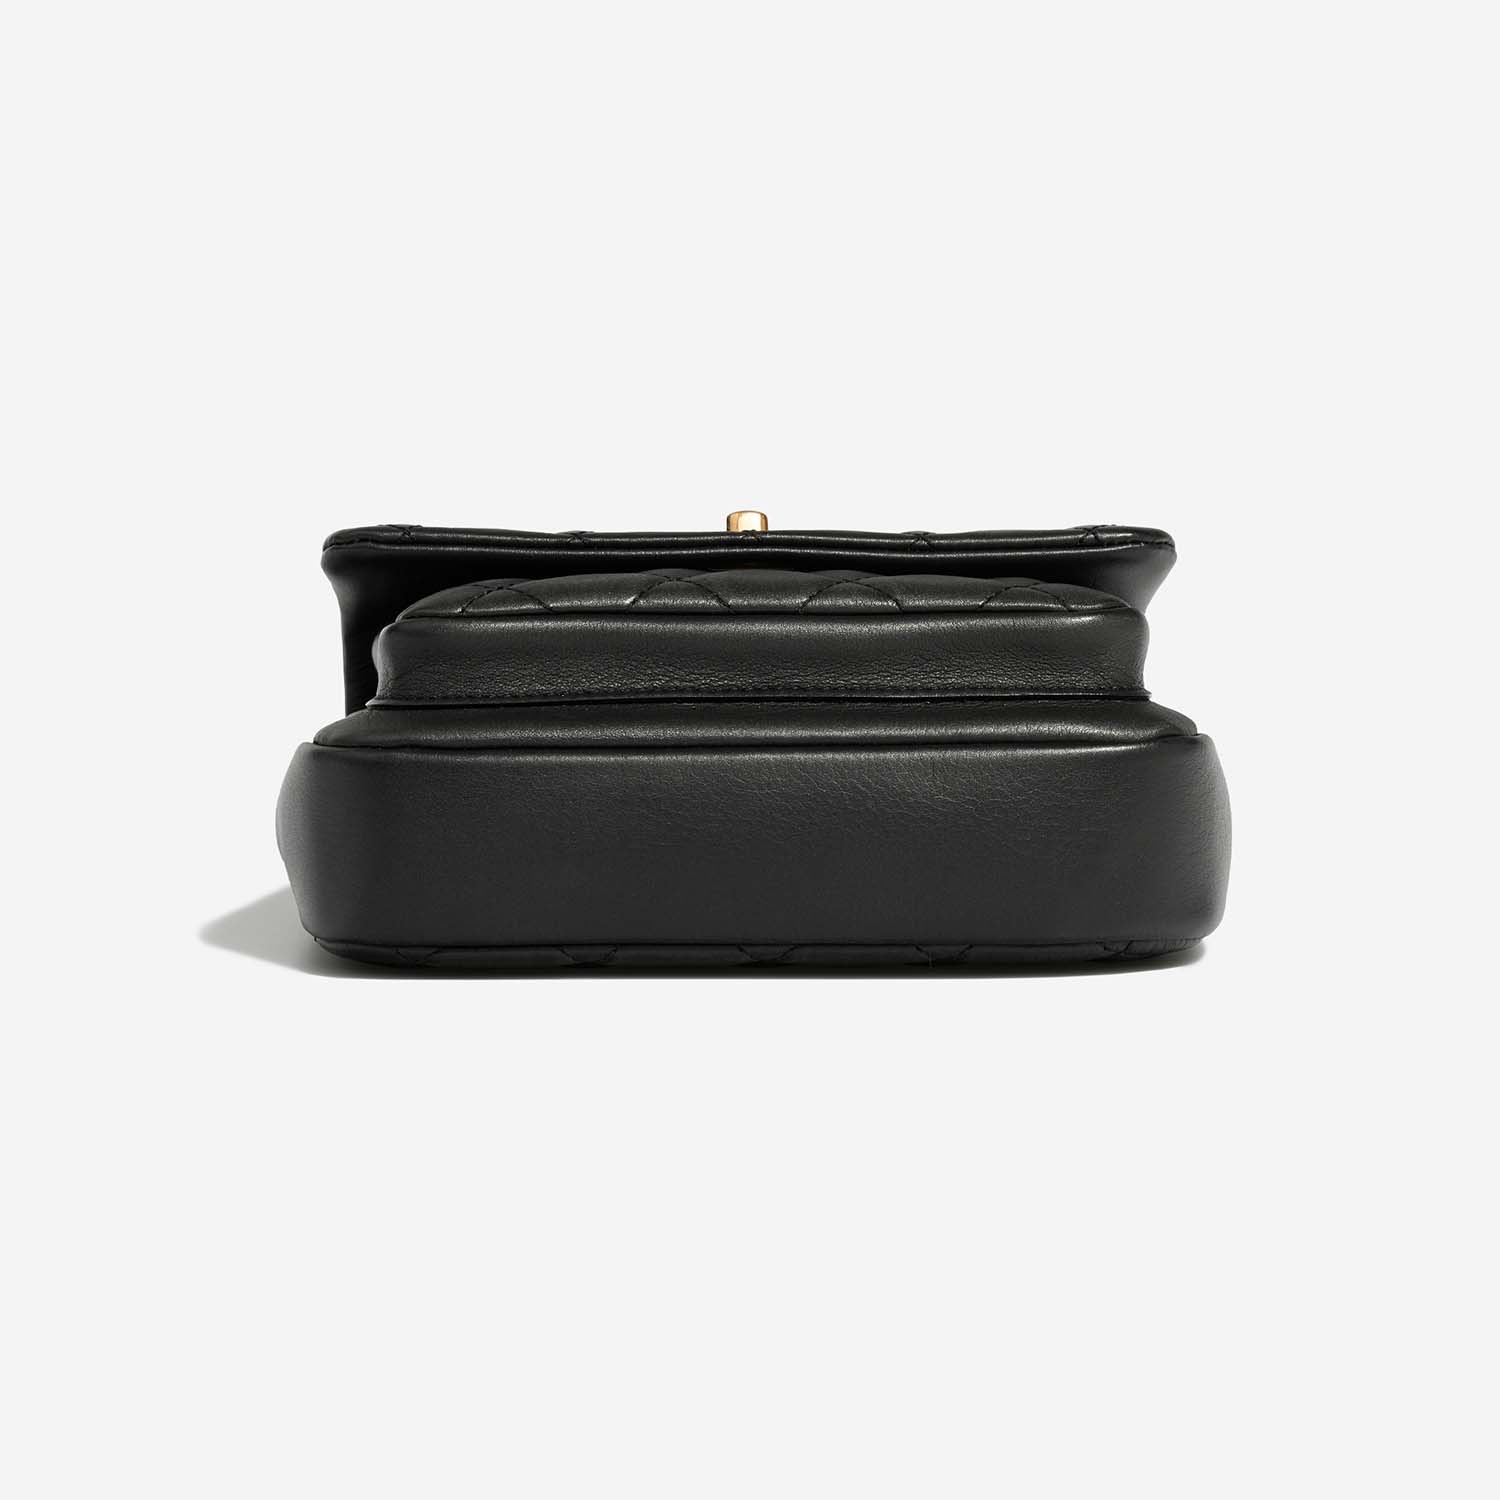 Chanel TimelessHandle Small Black Bottom | Verkaufen Sie Ihre Designer-Tasche auf Saclab.com